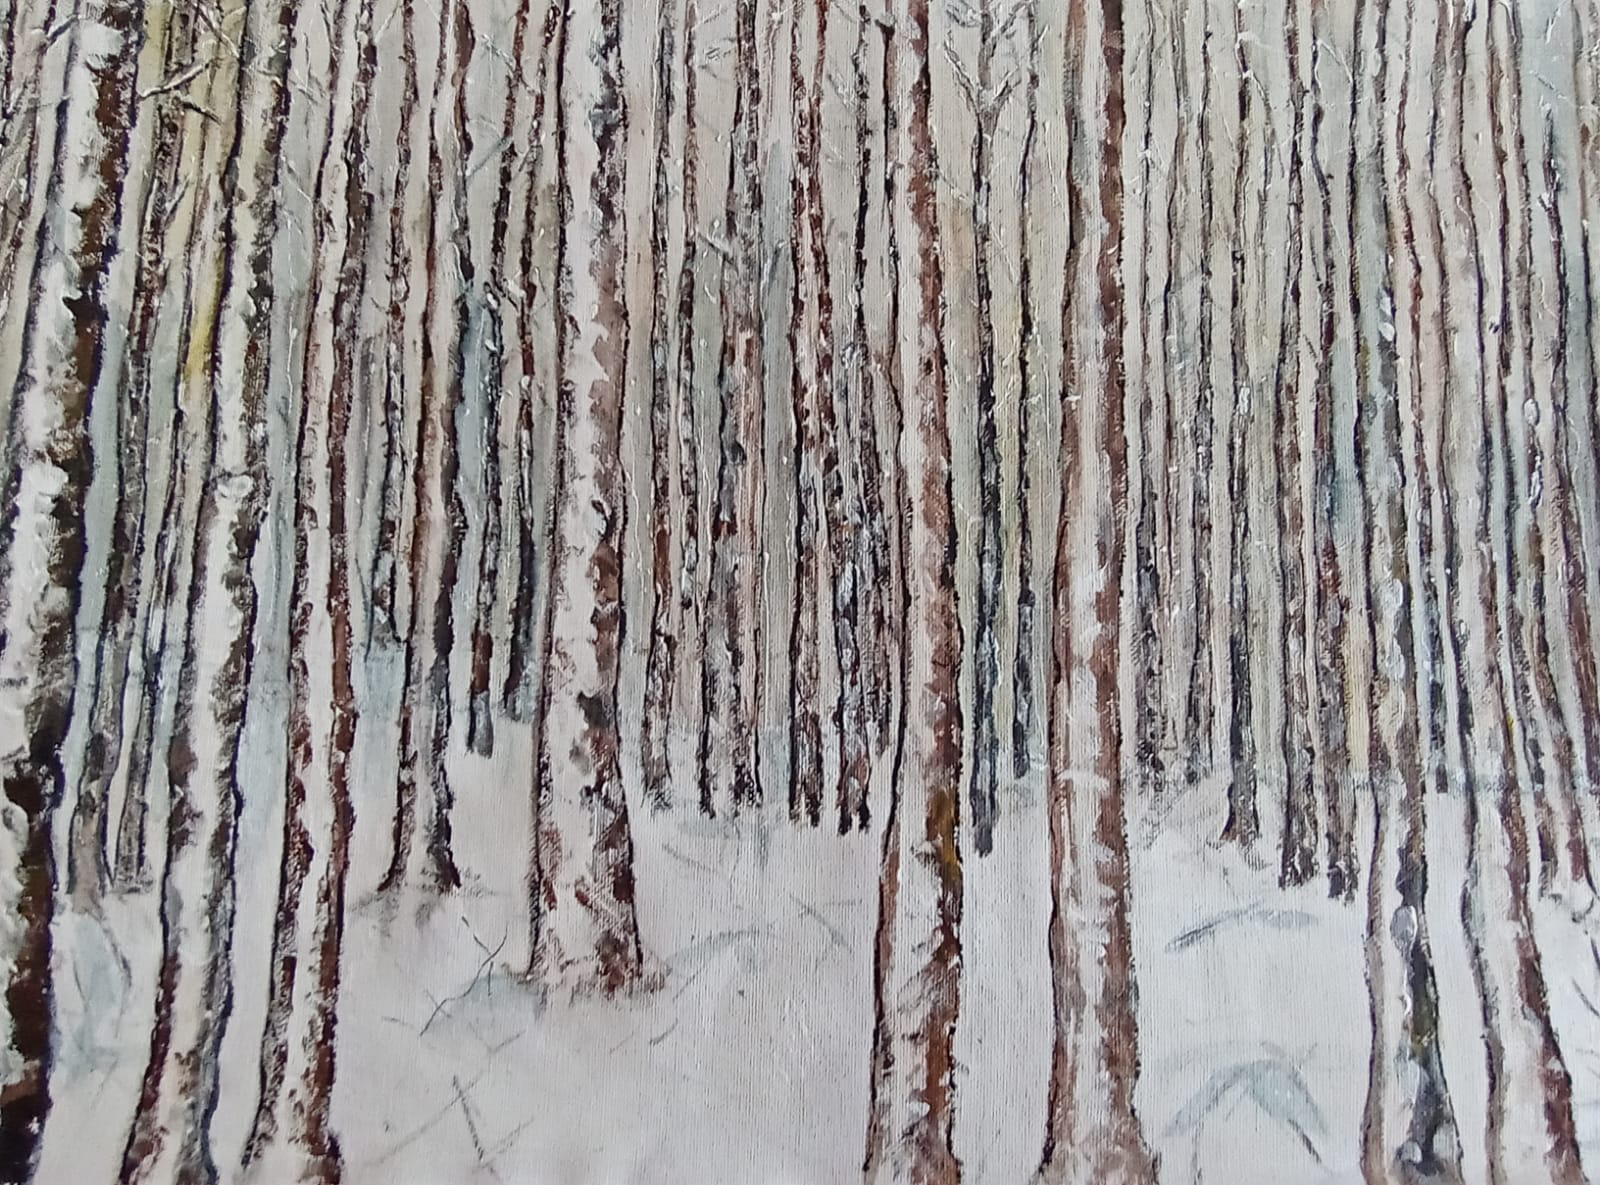 Drzewa w lesie zimowym, graficznie namalowane same ośnieżone pnie.